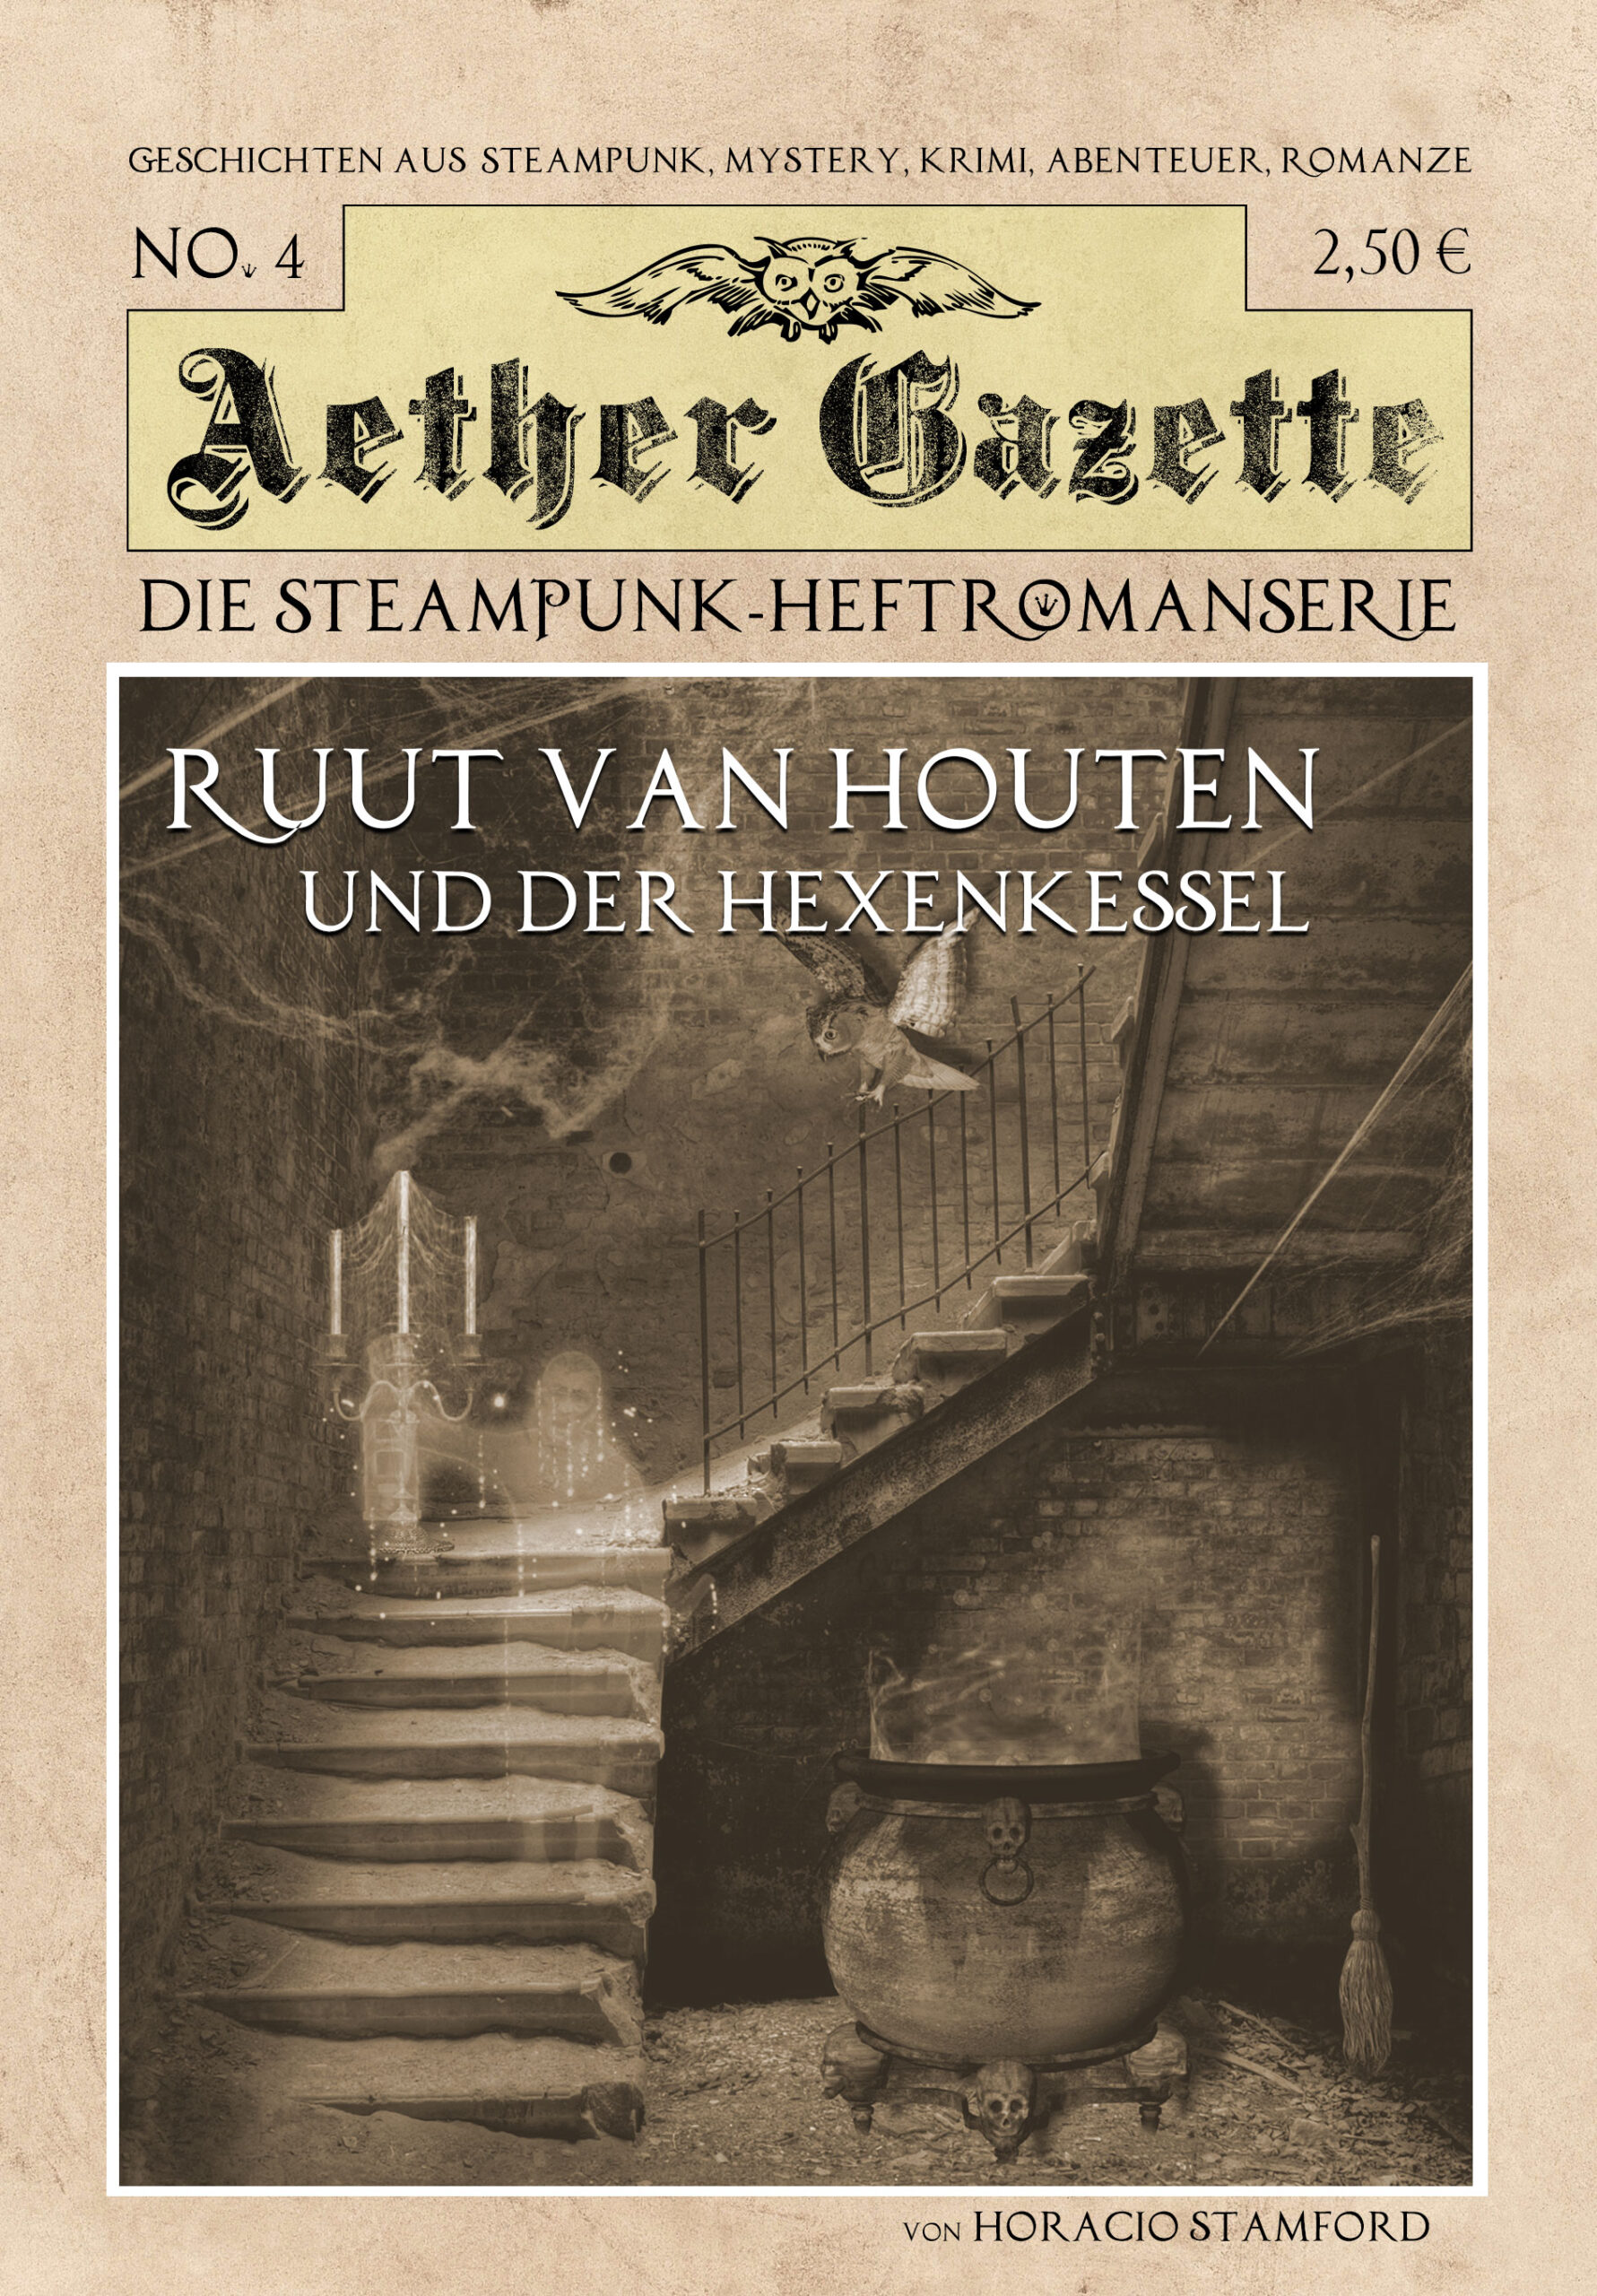 Aether-Gazette-EG-04